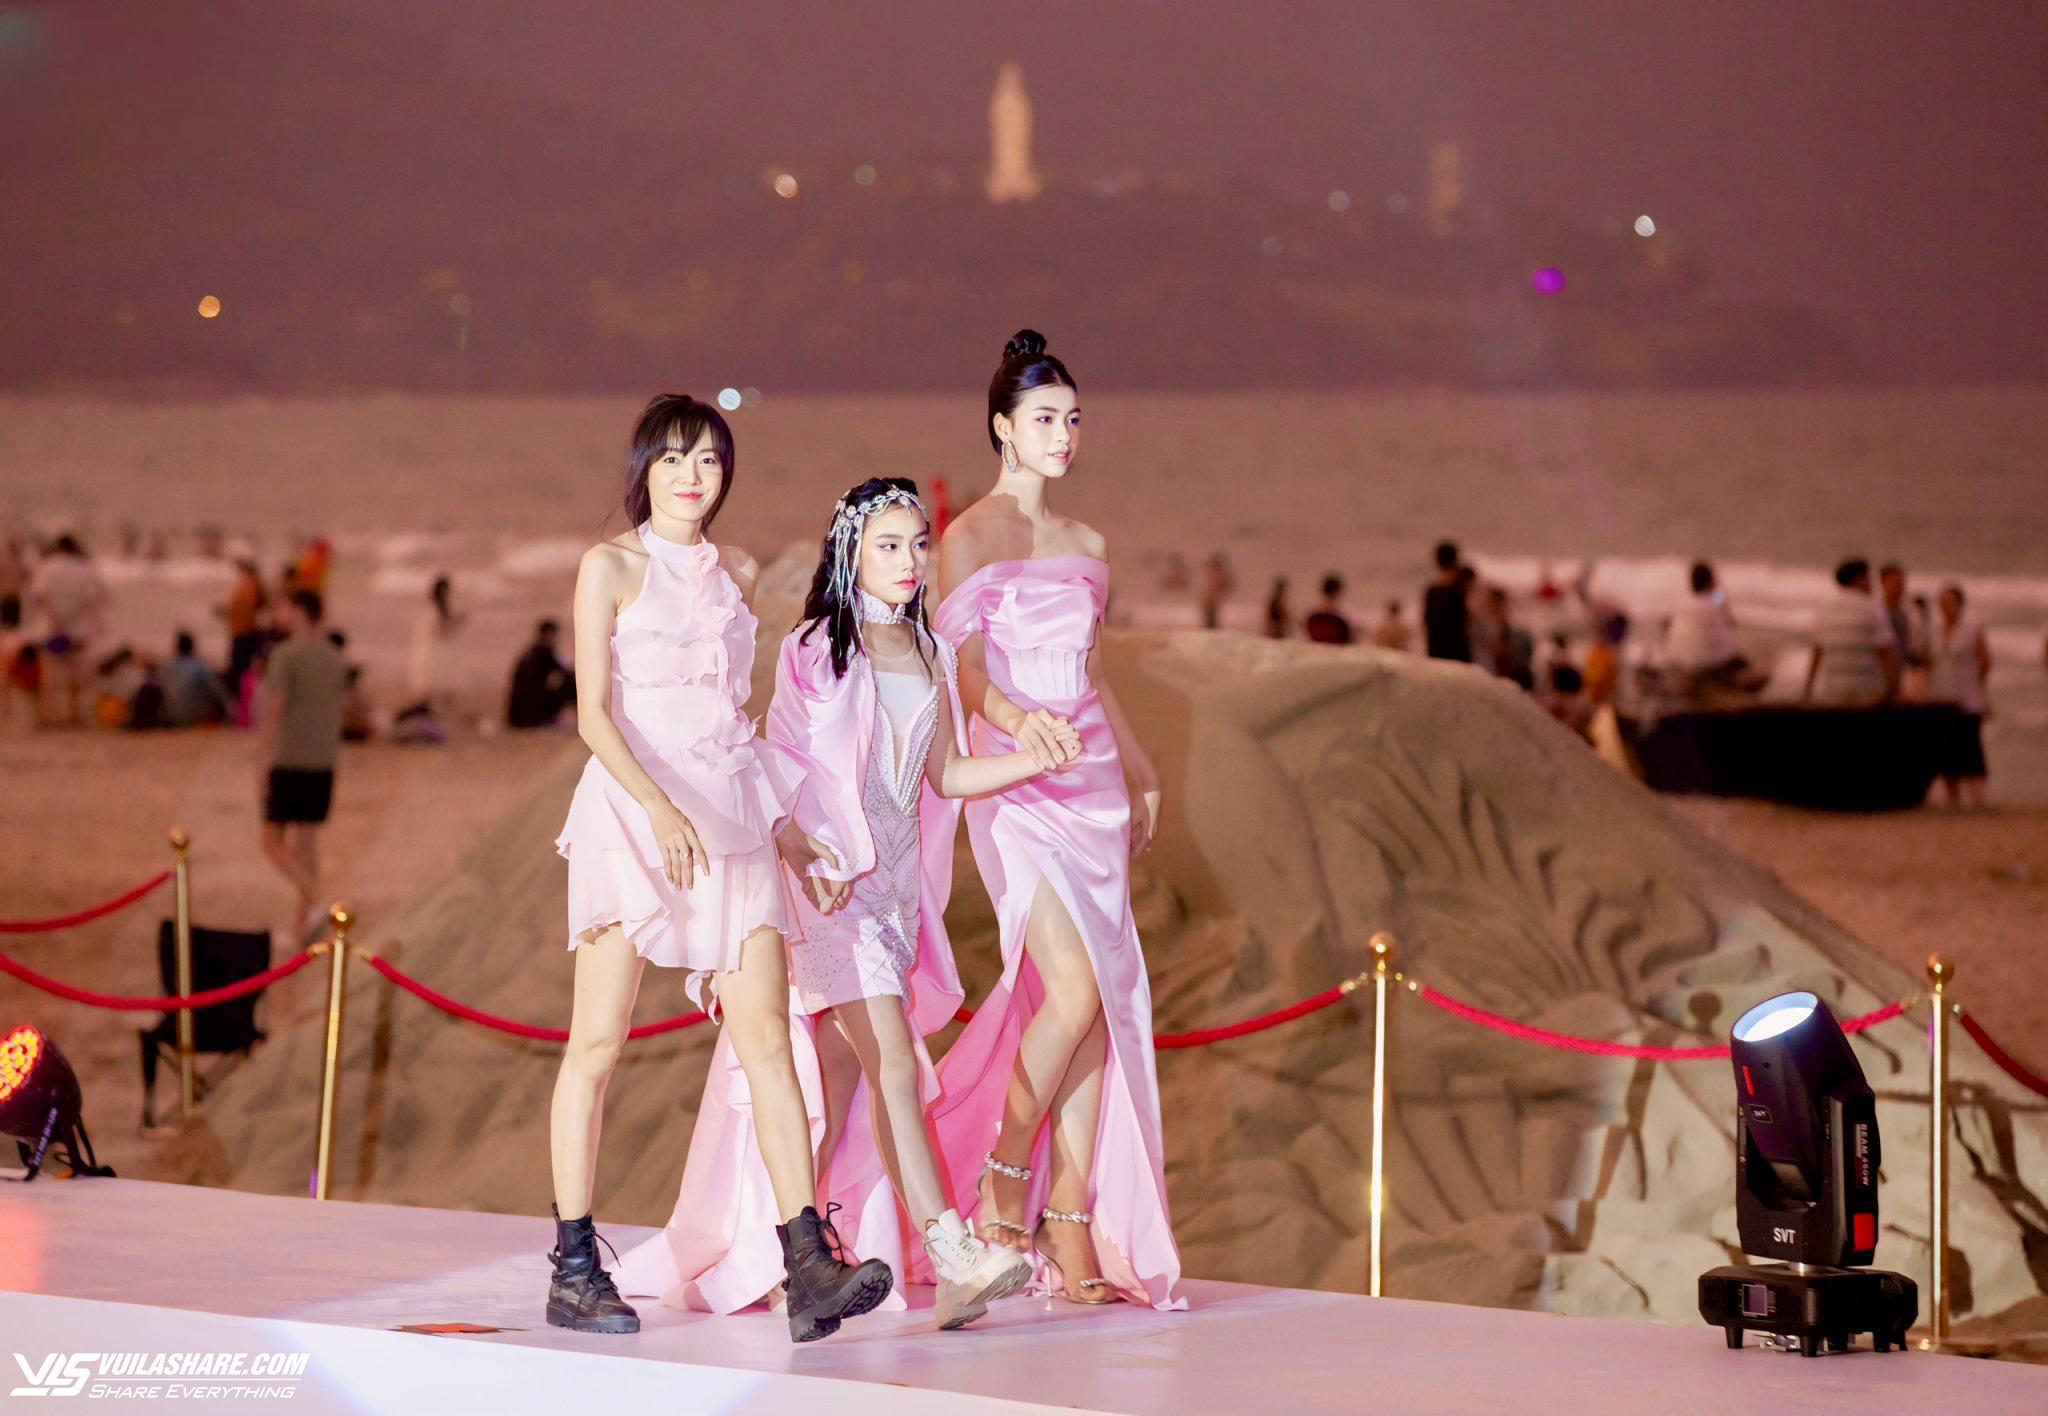 Mẫu nhí Trần Lê Băng Châu gây ấn tượng trên các sàn diễn thời trang- Ảnh 4.